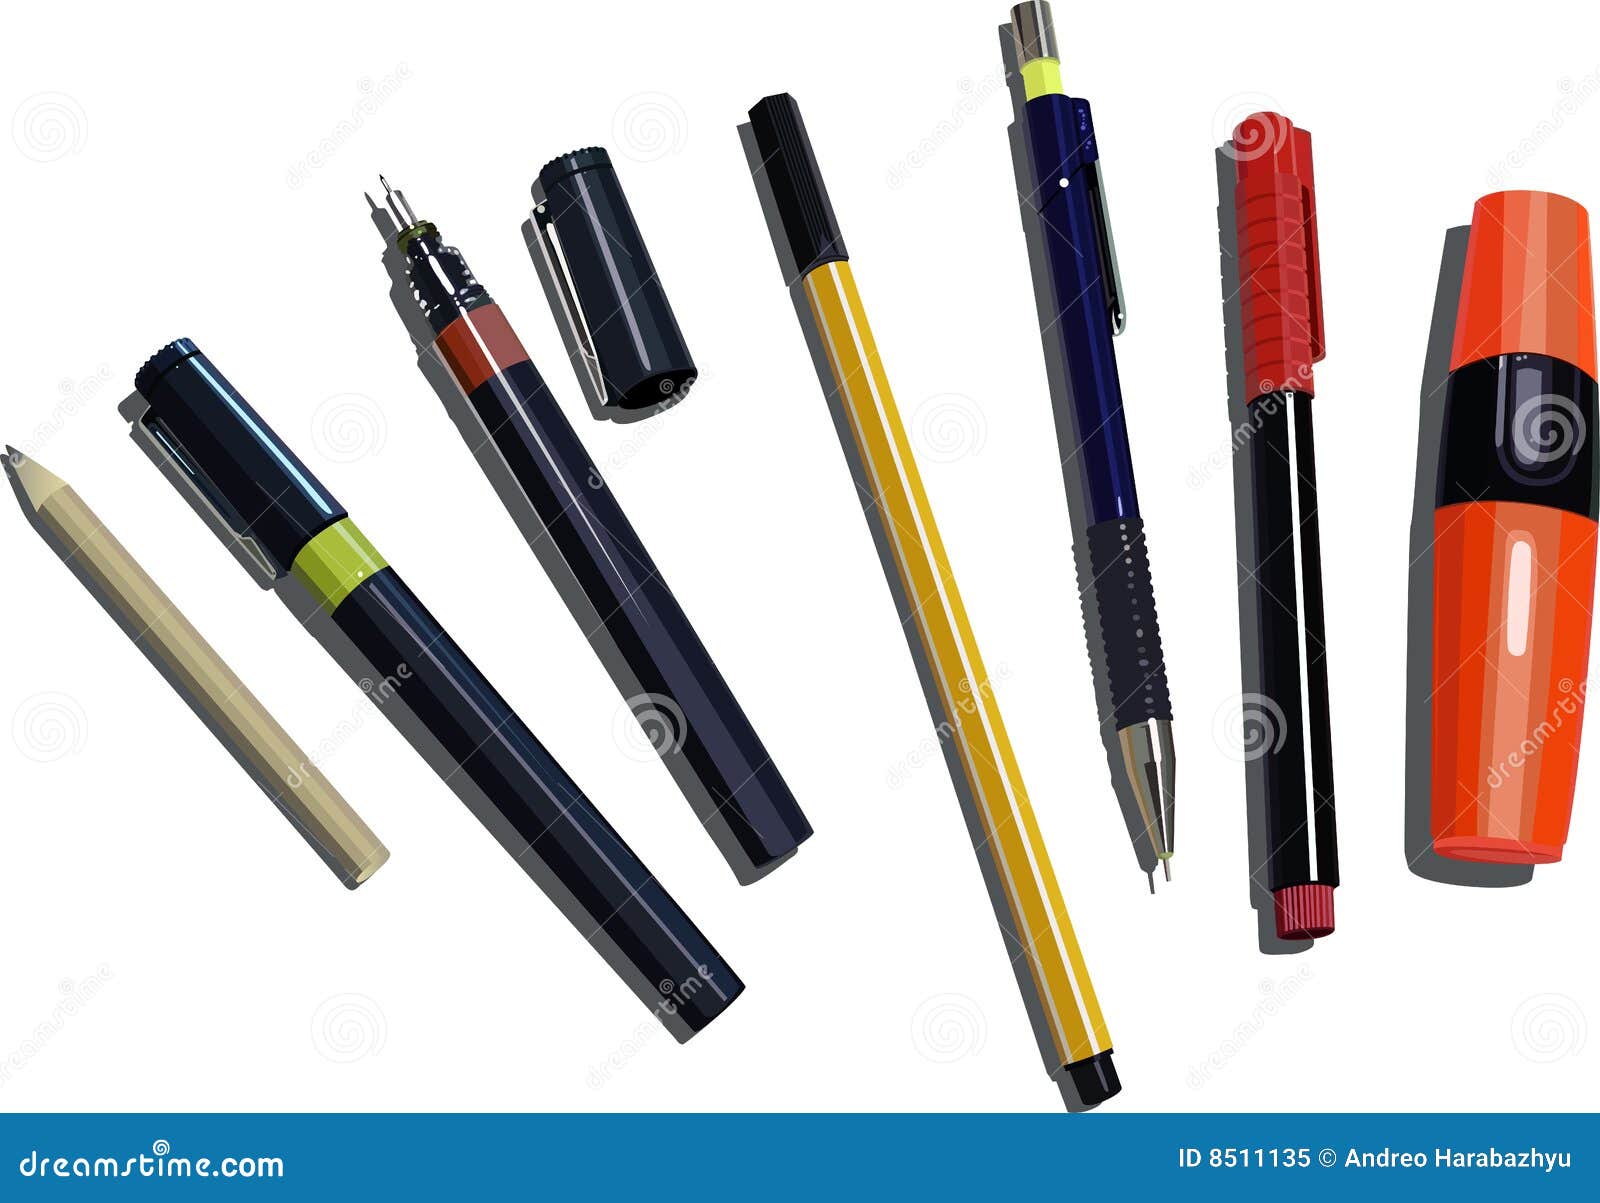 Multi Color Ballpoint Pen Stock Illustrations – 17 Multi Color